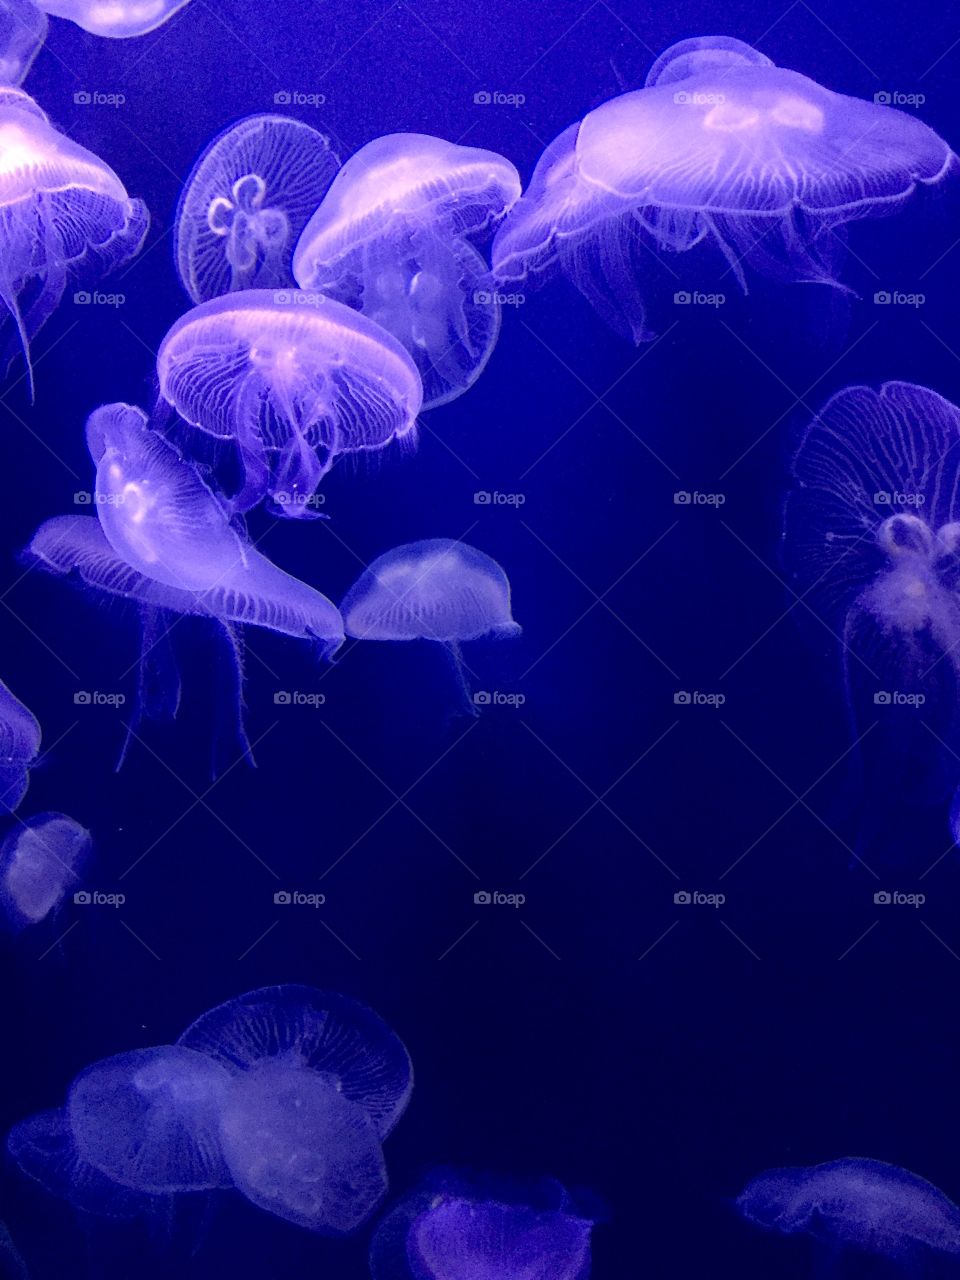 Purple jellyfish on dark blue background